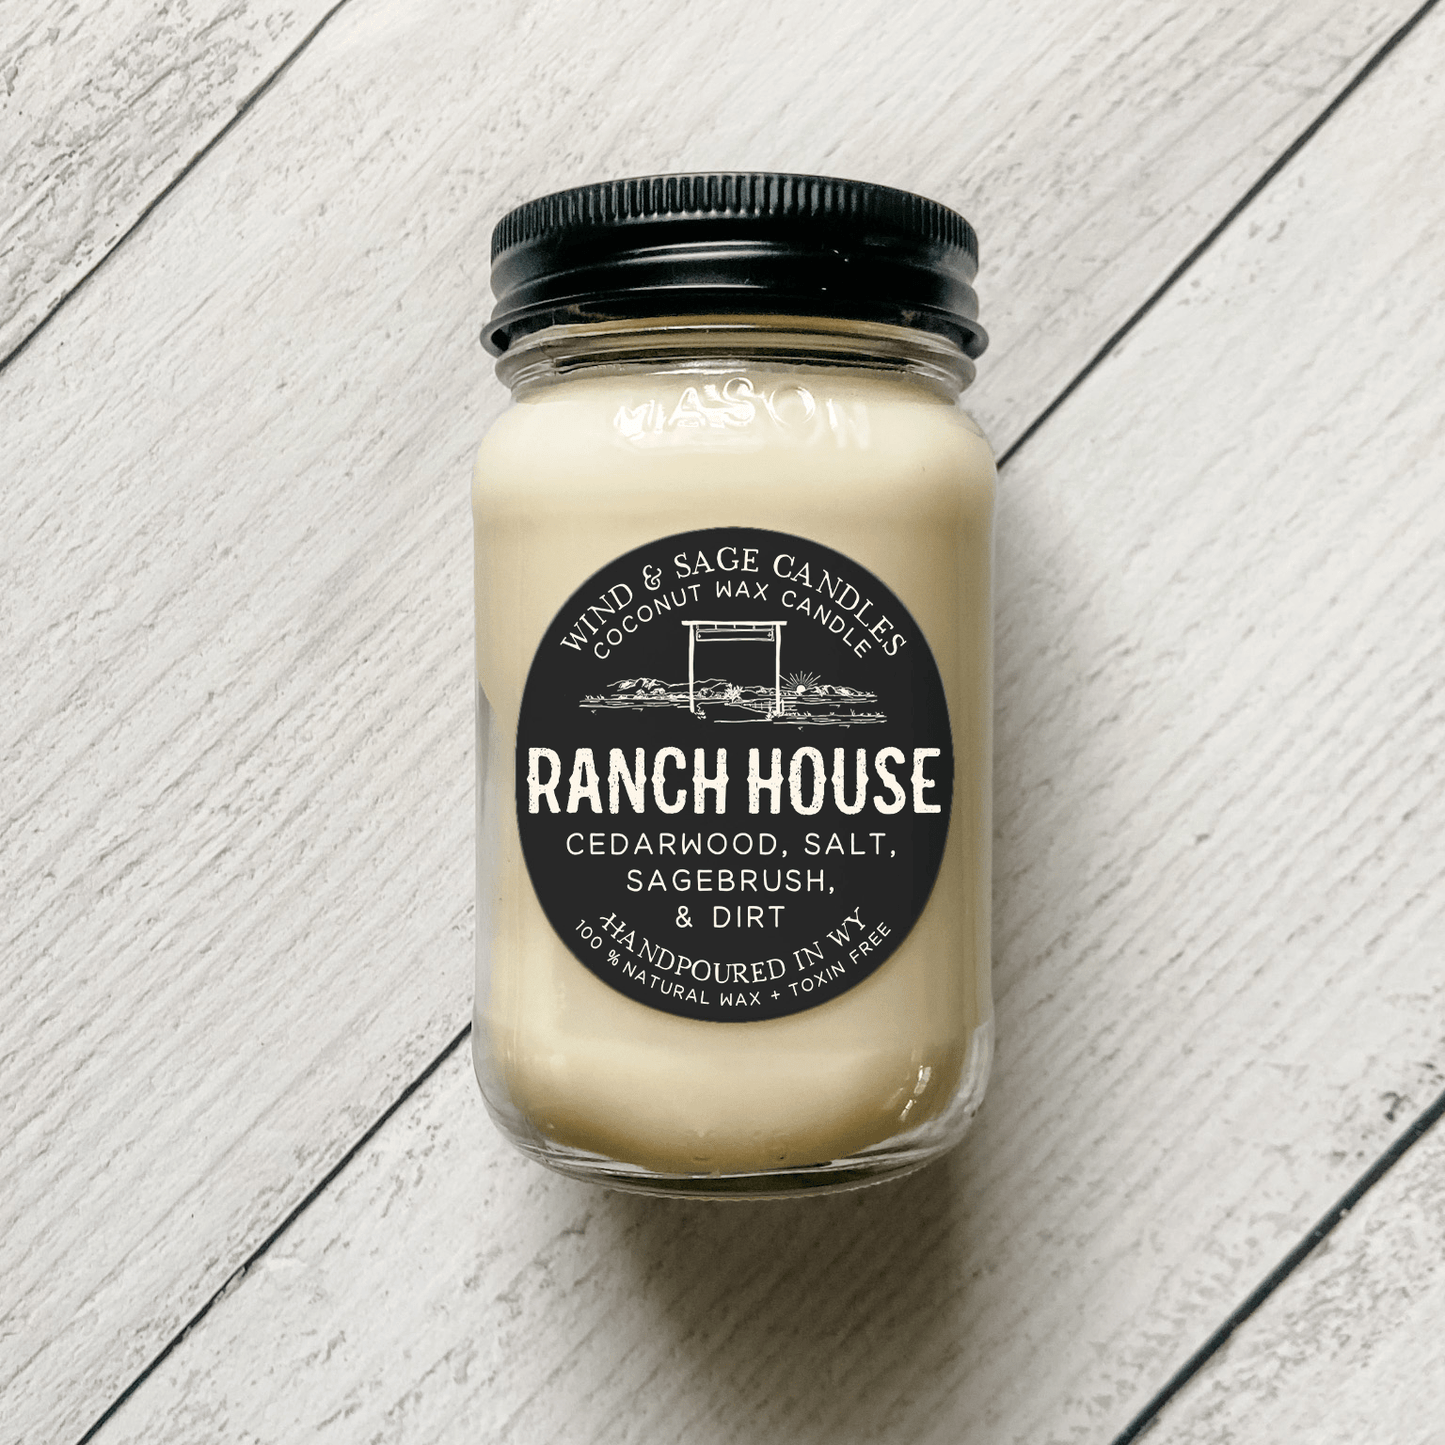 Ranch House Mason Jar Candle, 100% Natural Wax